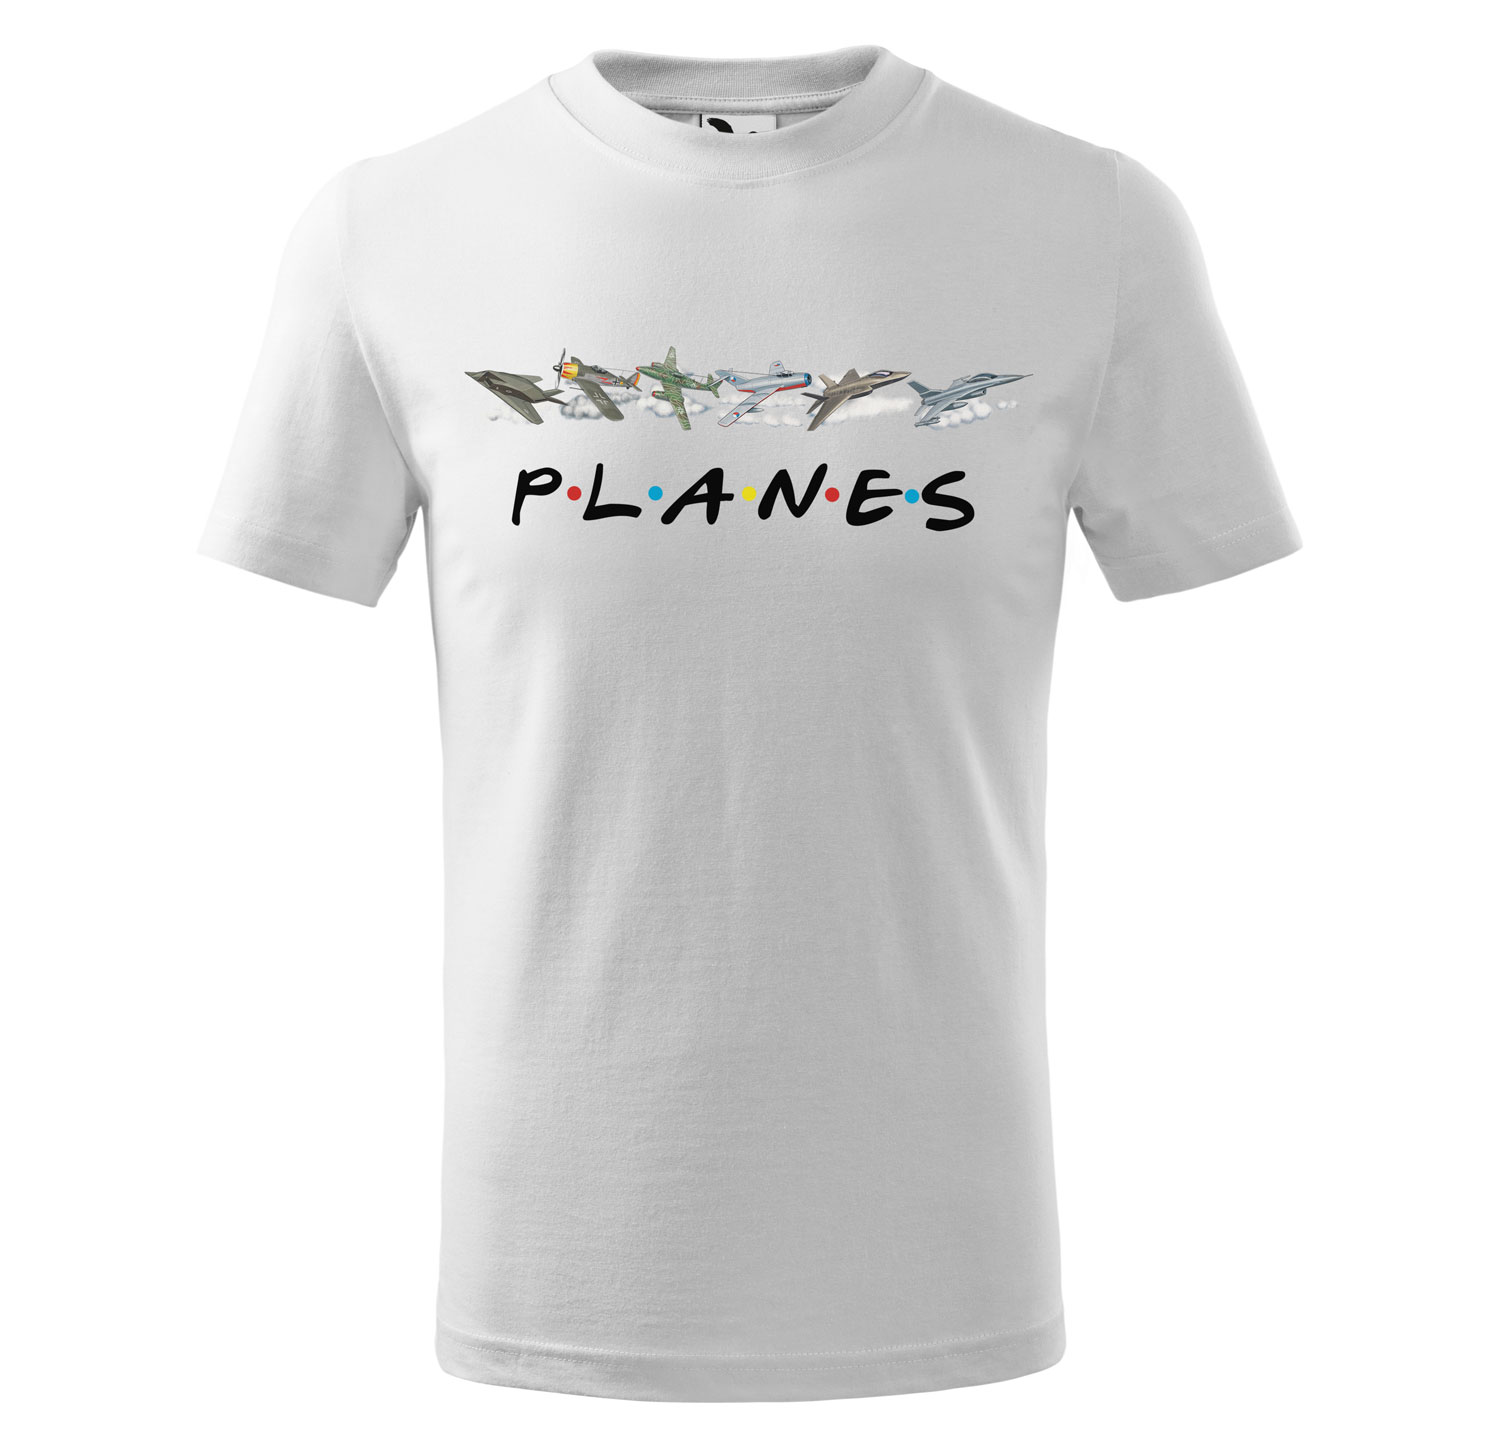 Tričko Planes - dětské (Velikost: 146, Barva trička: Bílá)